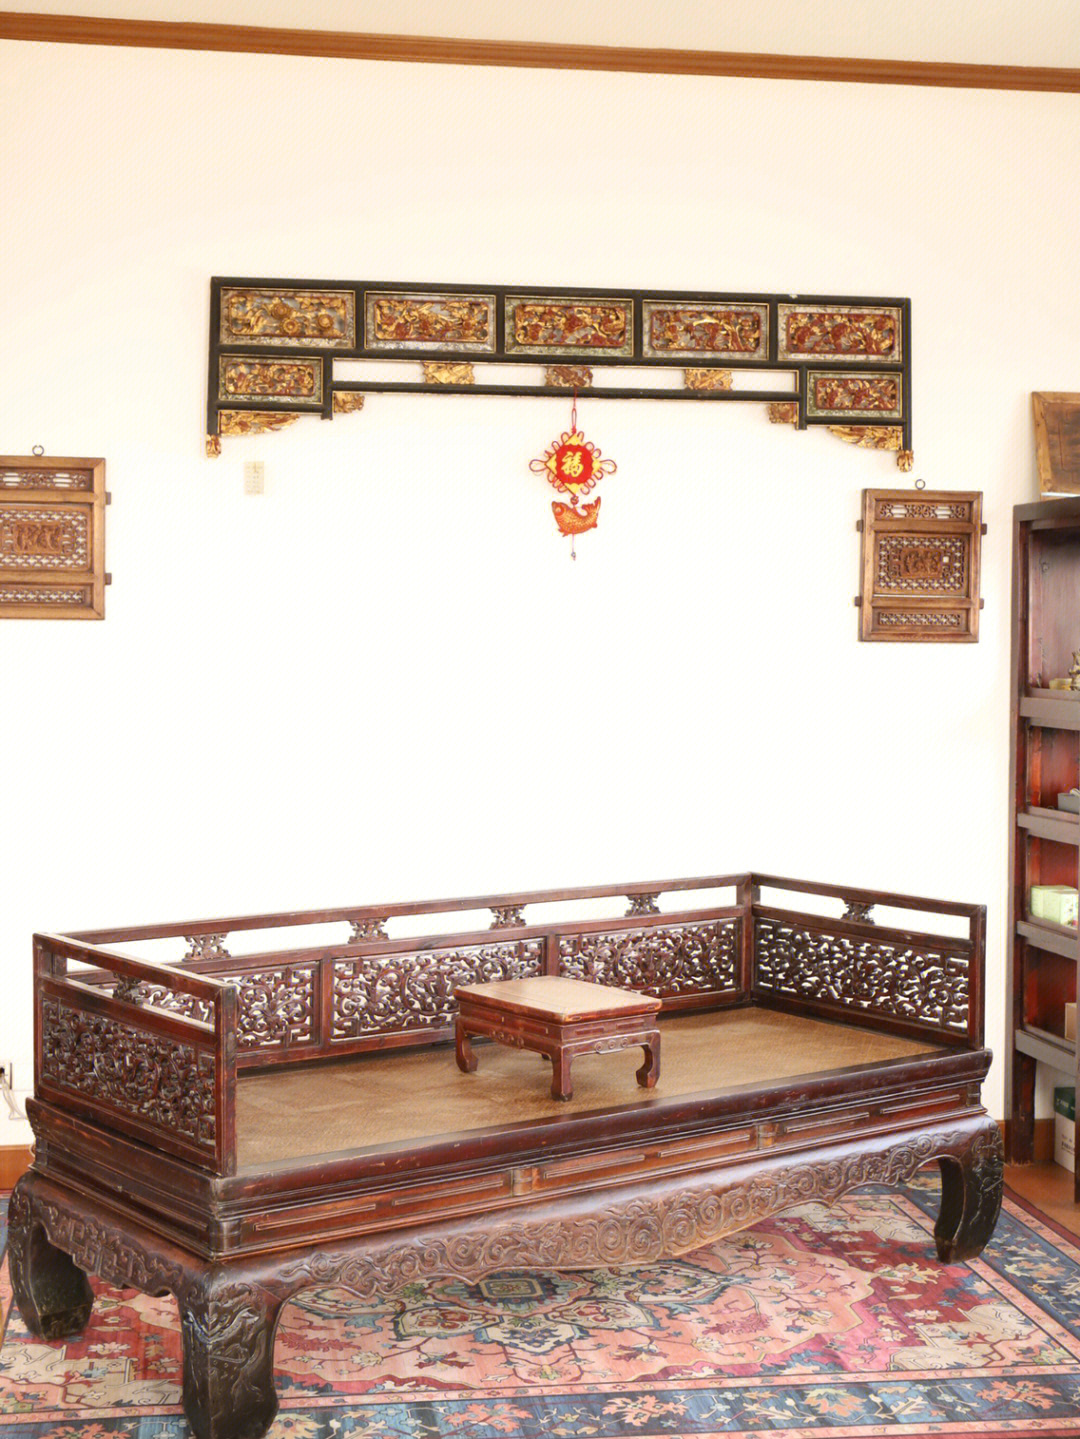 是左右和后面装有屏板但不带立柱顶架的一种床榻,是中国古代男性用以